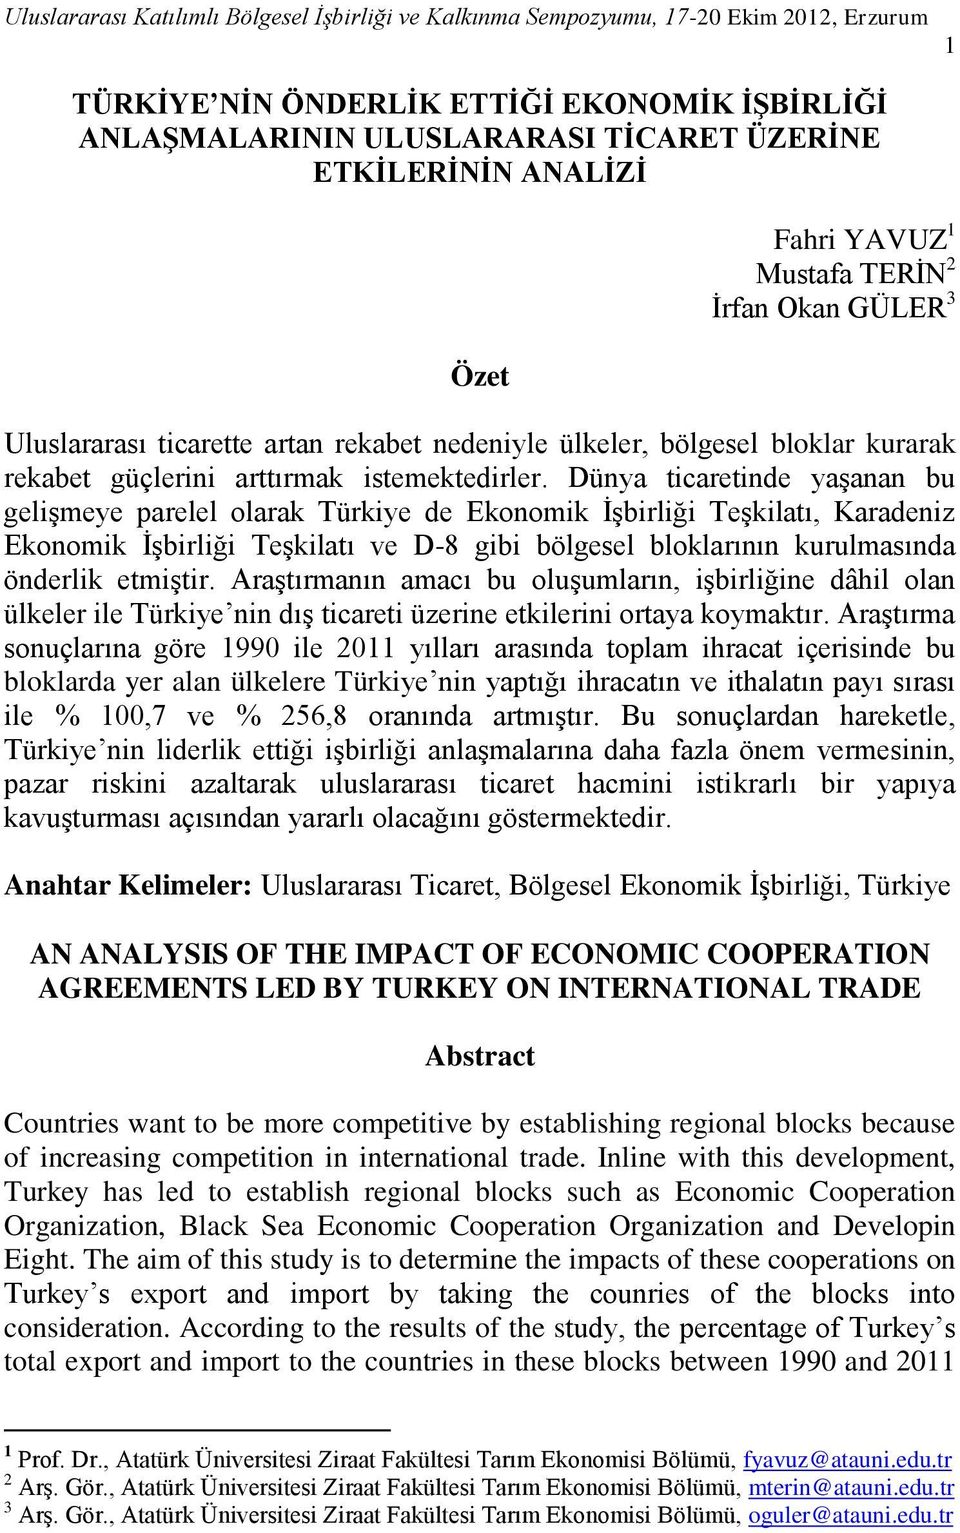 Dünya ticaretinde yaşanan bu gelişmeye parelel olarak Türkiye de Ekonomik İşbirliği Teşkilatı, Karadeniz Ekonomik İşbirliği Teşkilatı ve D-8 gibi bölgesel bloklarının kurulmasında önderlik etmiştir.